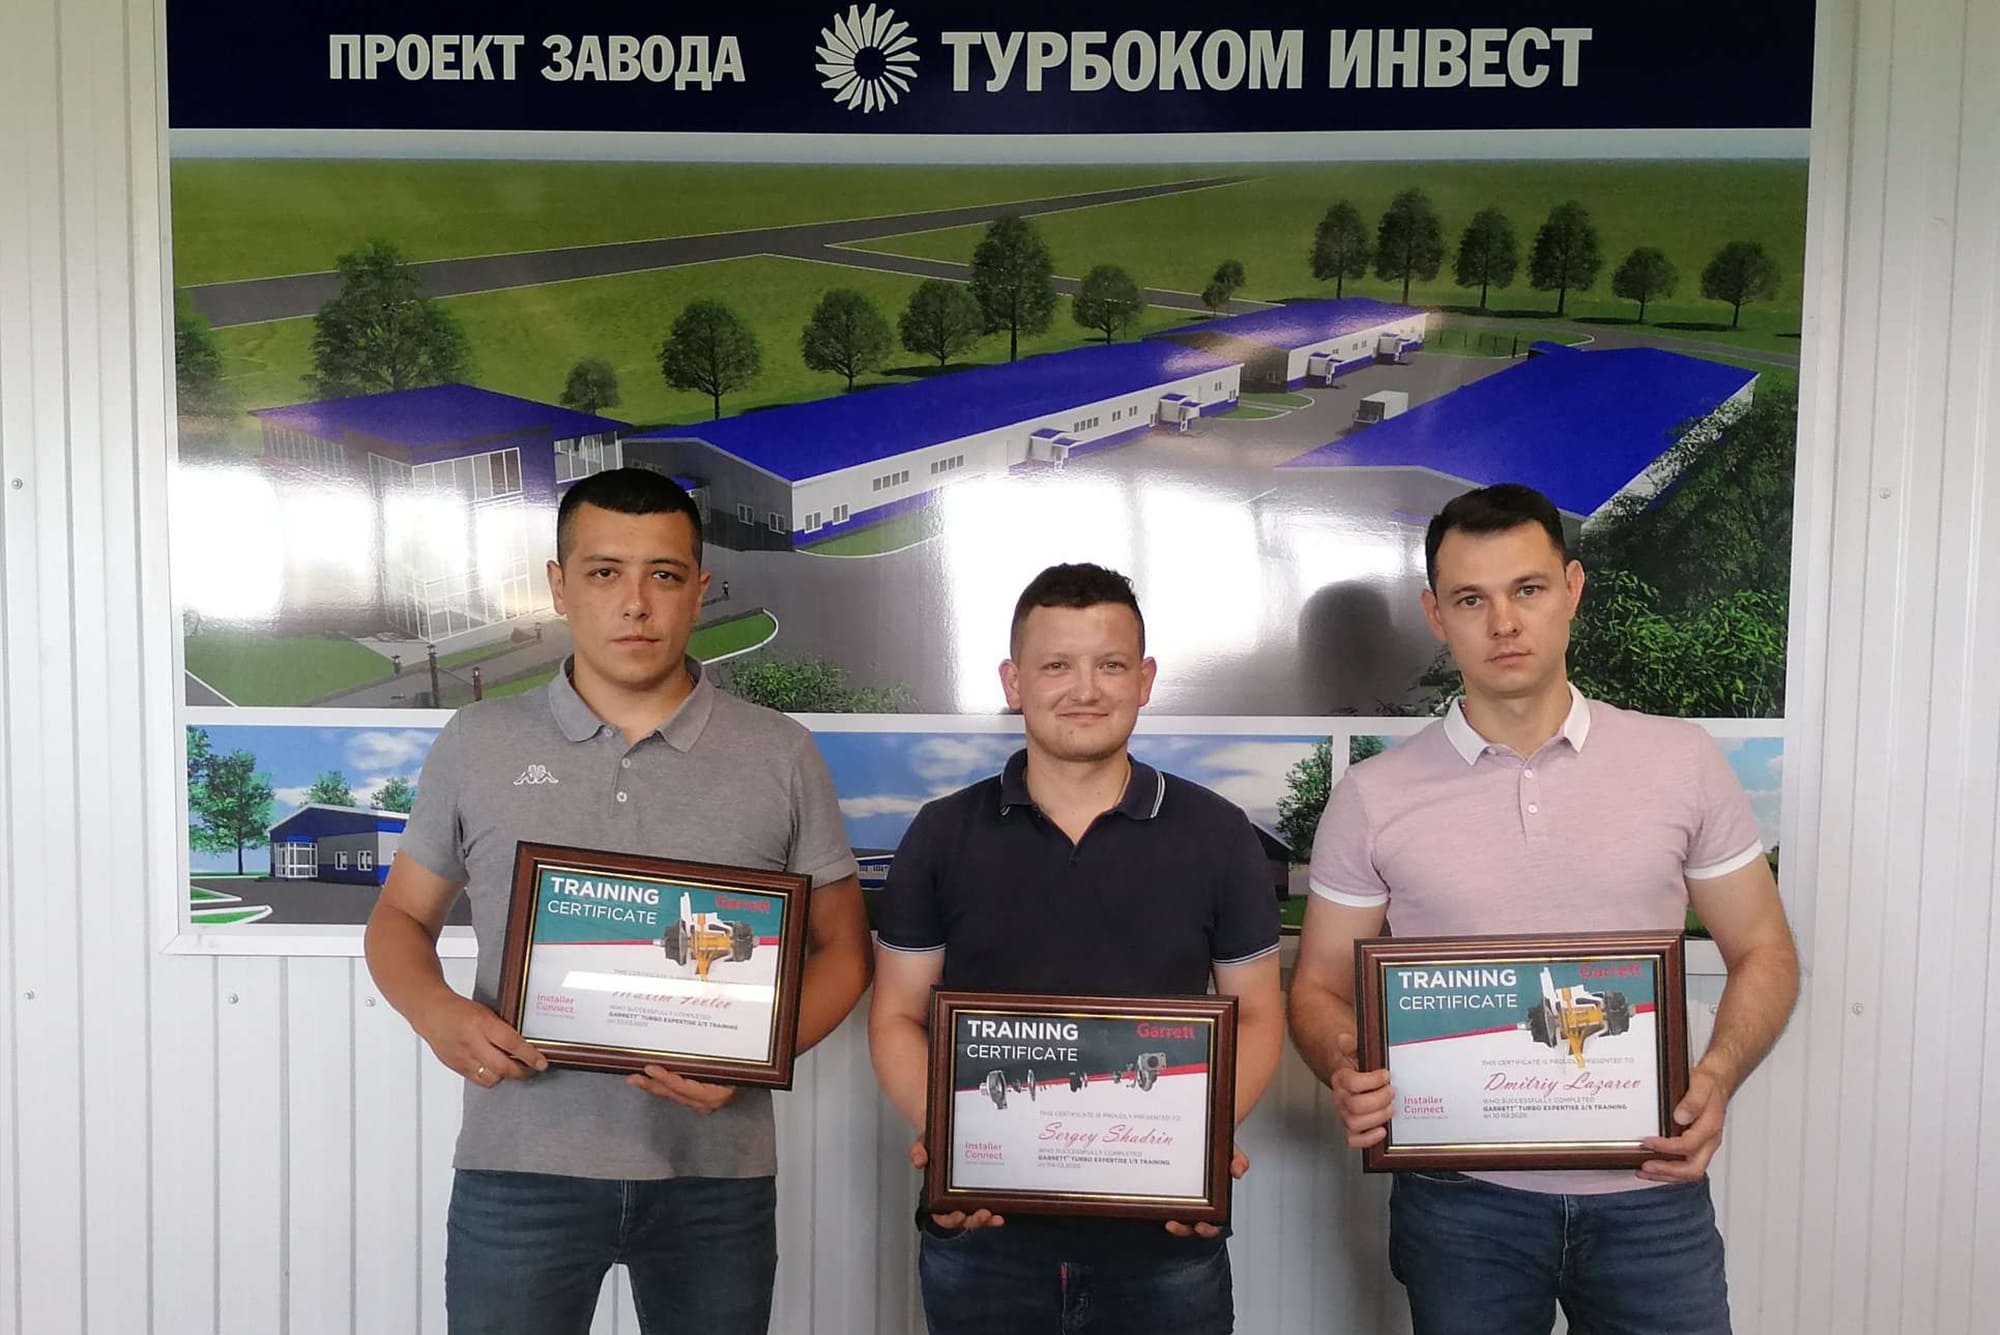 Дмитрий Лазарев прошел обучение в компании "Garett"